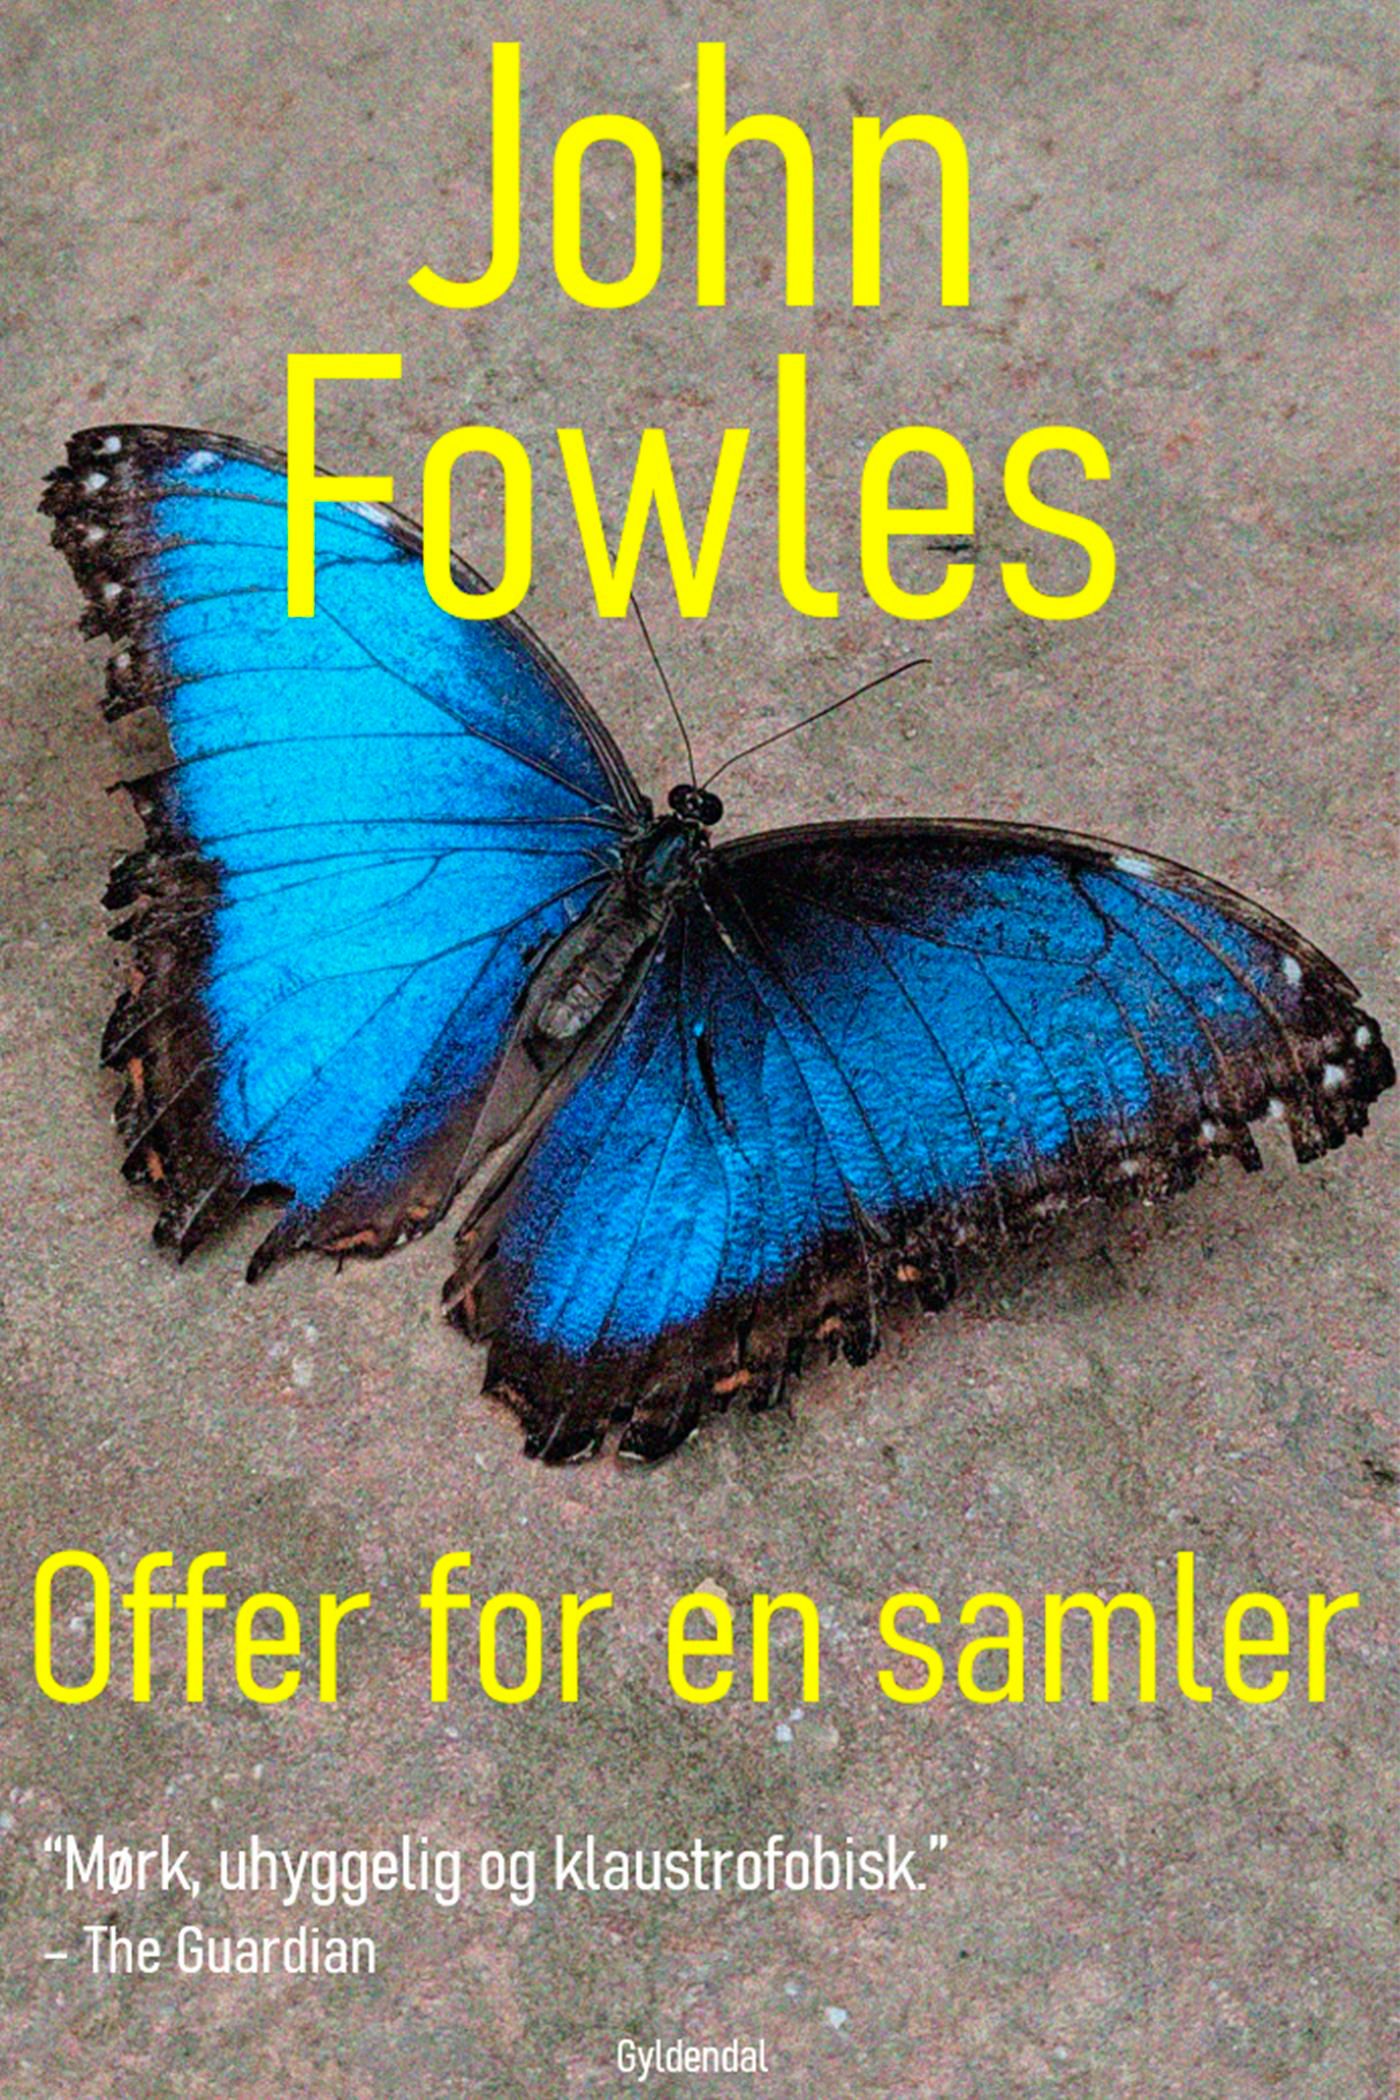 Offer for en samler, e-bok av John Fowles